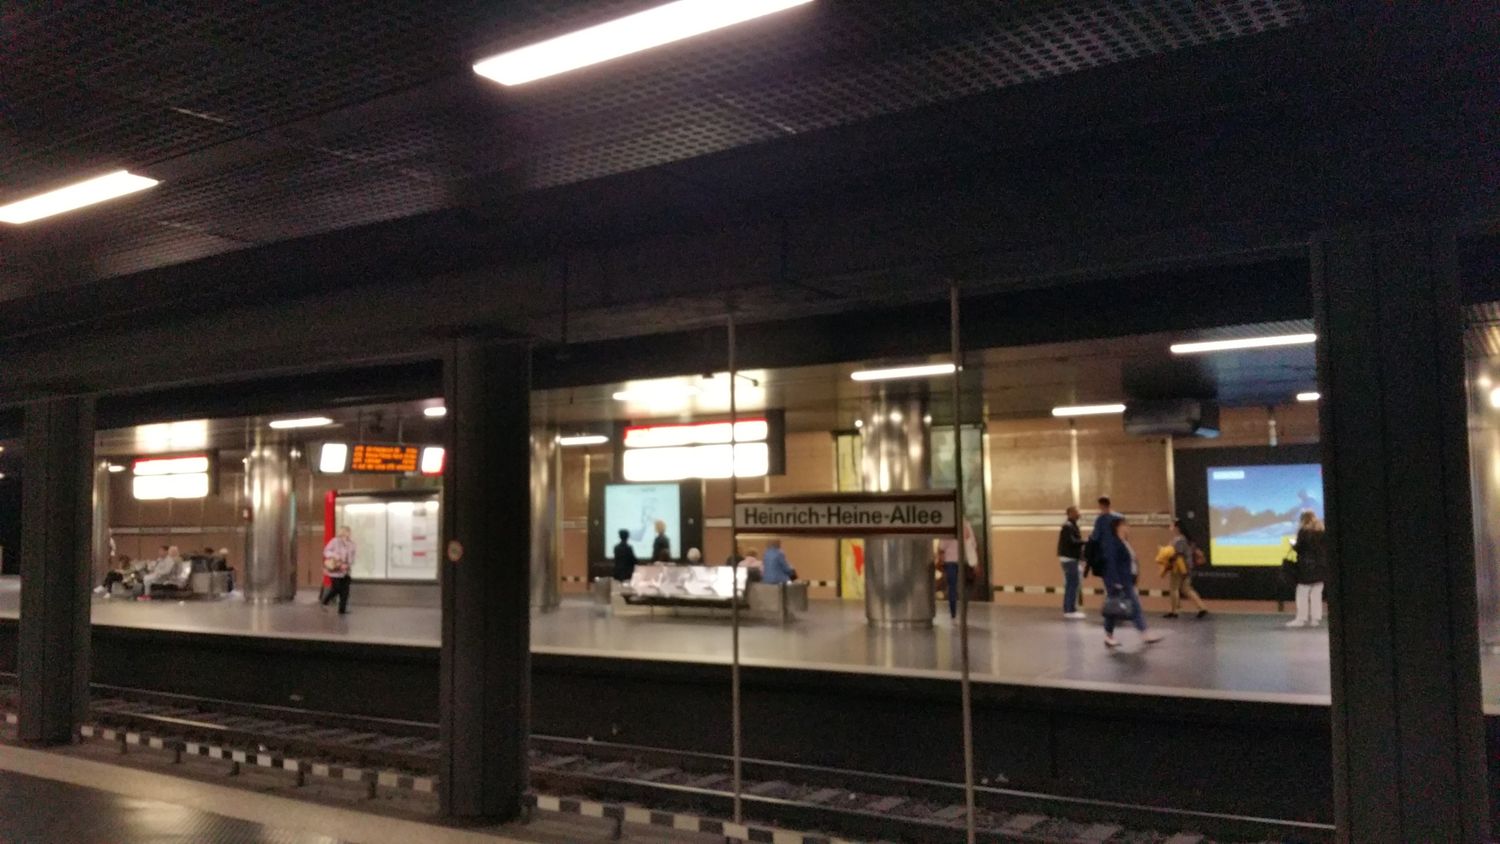 Bilder und Fotos zu U-Bahnhof Heinrich-Heine-Allee in Düsseldorf, Heinrich- Heine-Allee